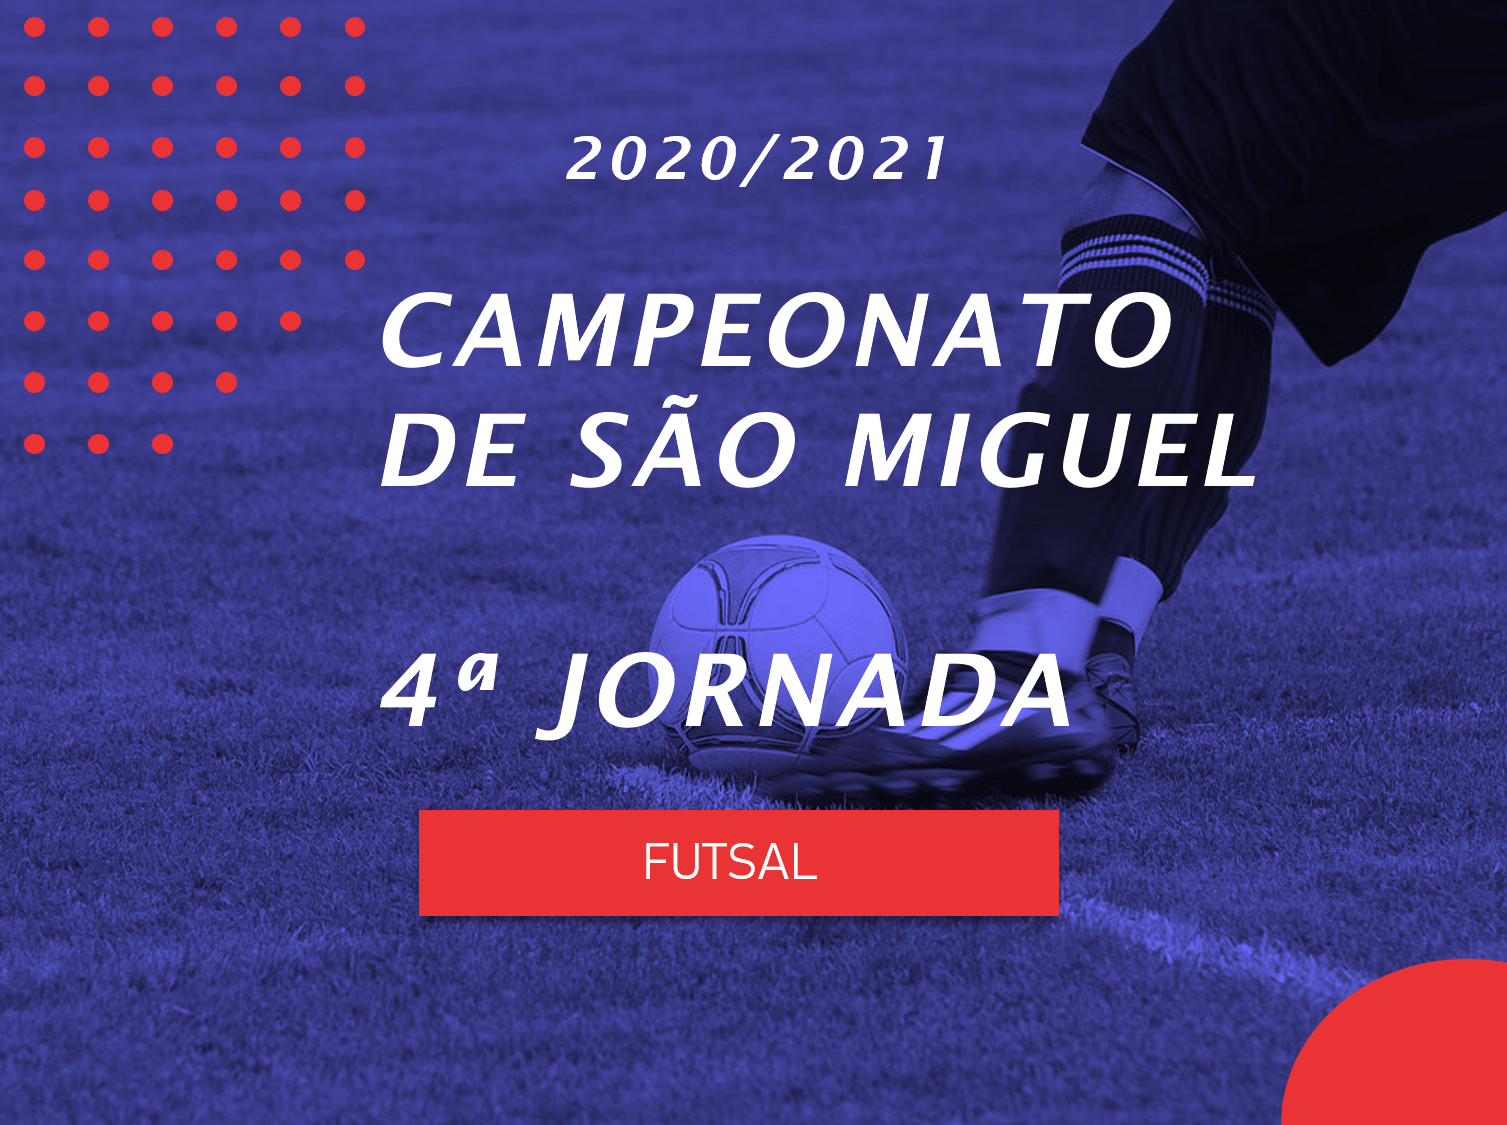 Campeonato de São Miguel - 11ª Jornada - Antevisão